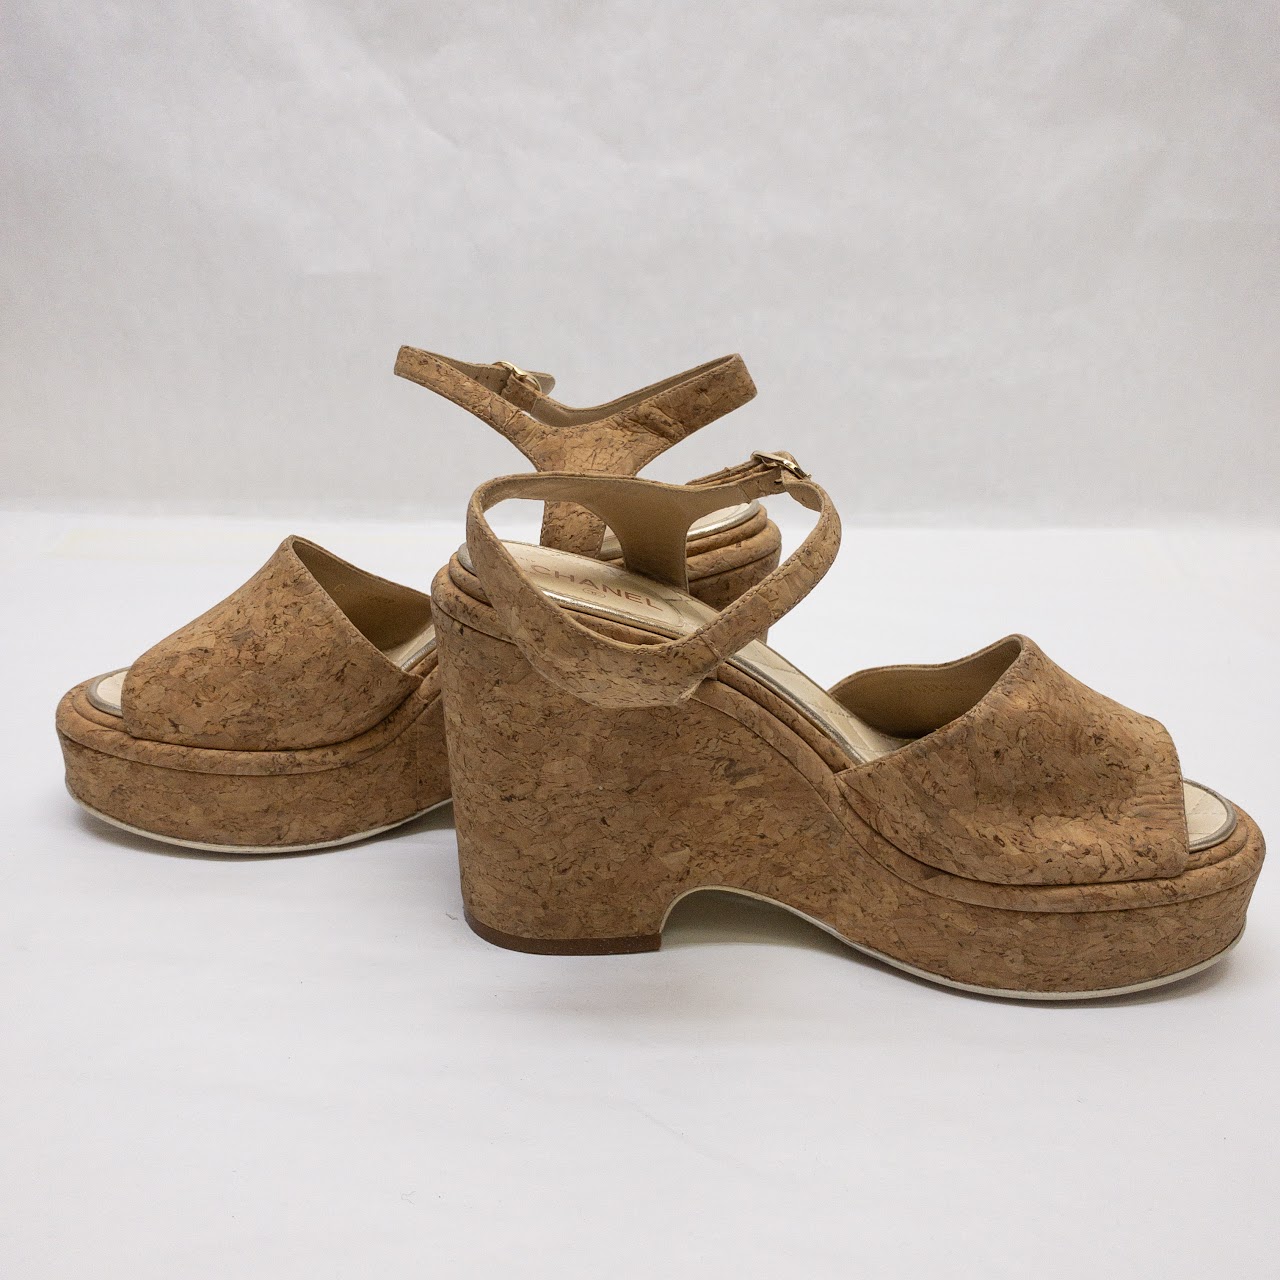 Chanel Cork Wedge Platform Sandals